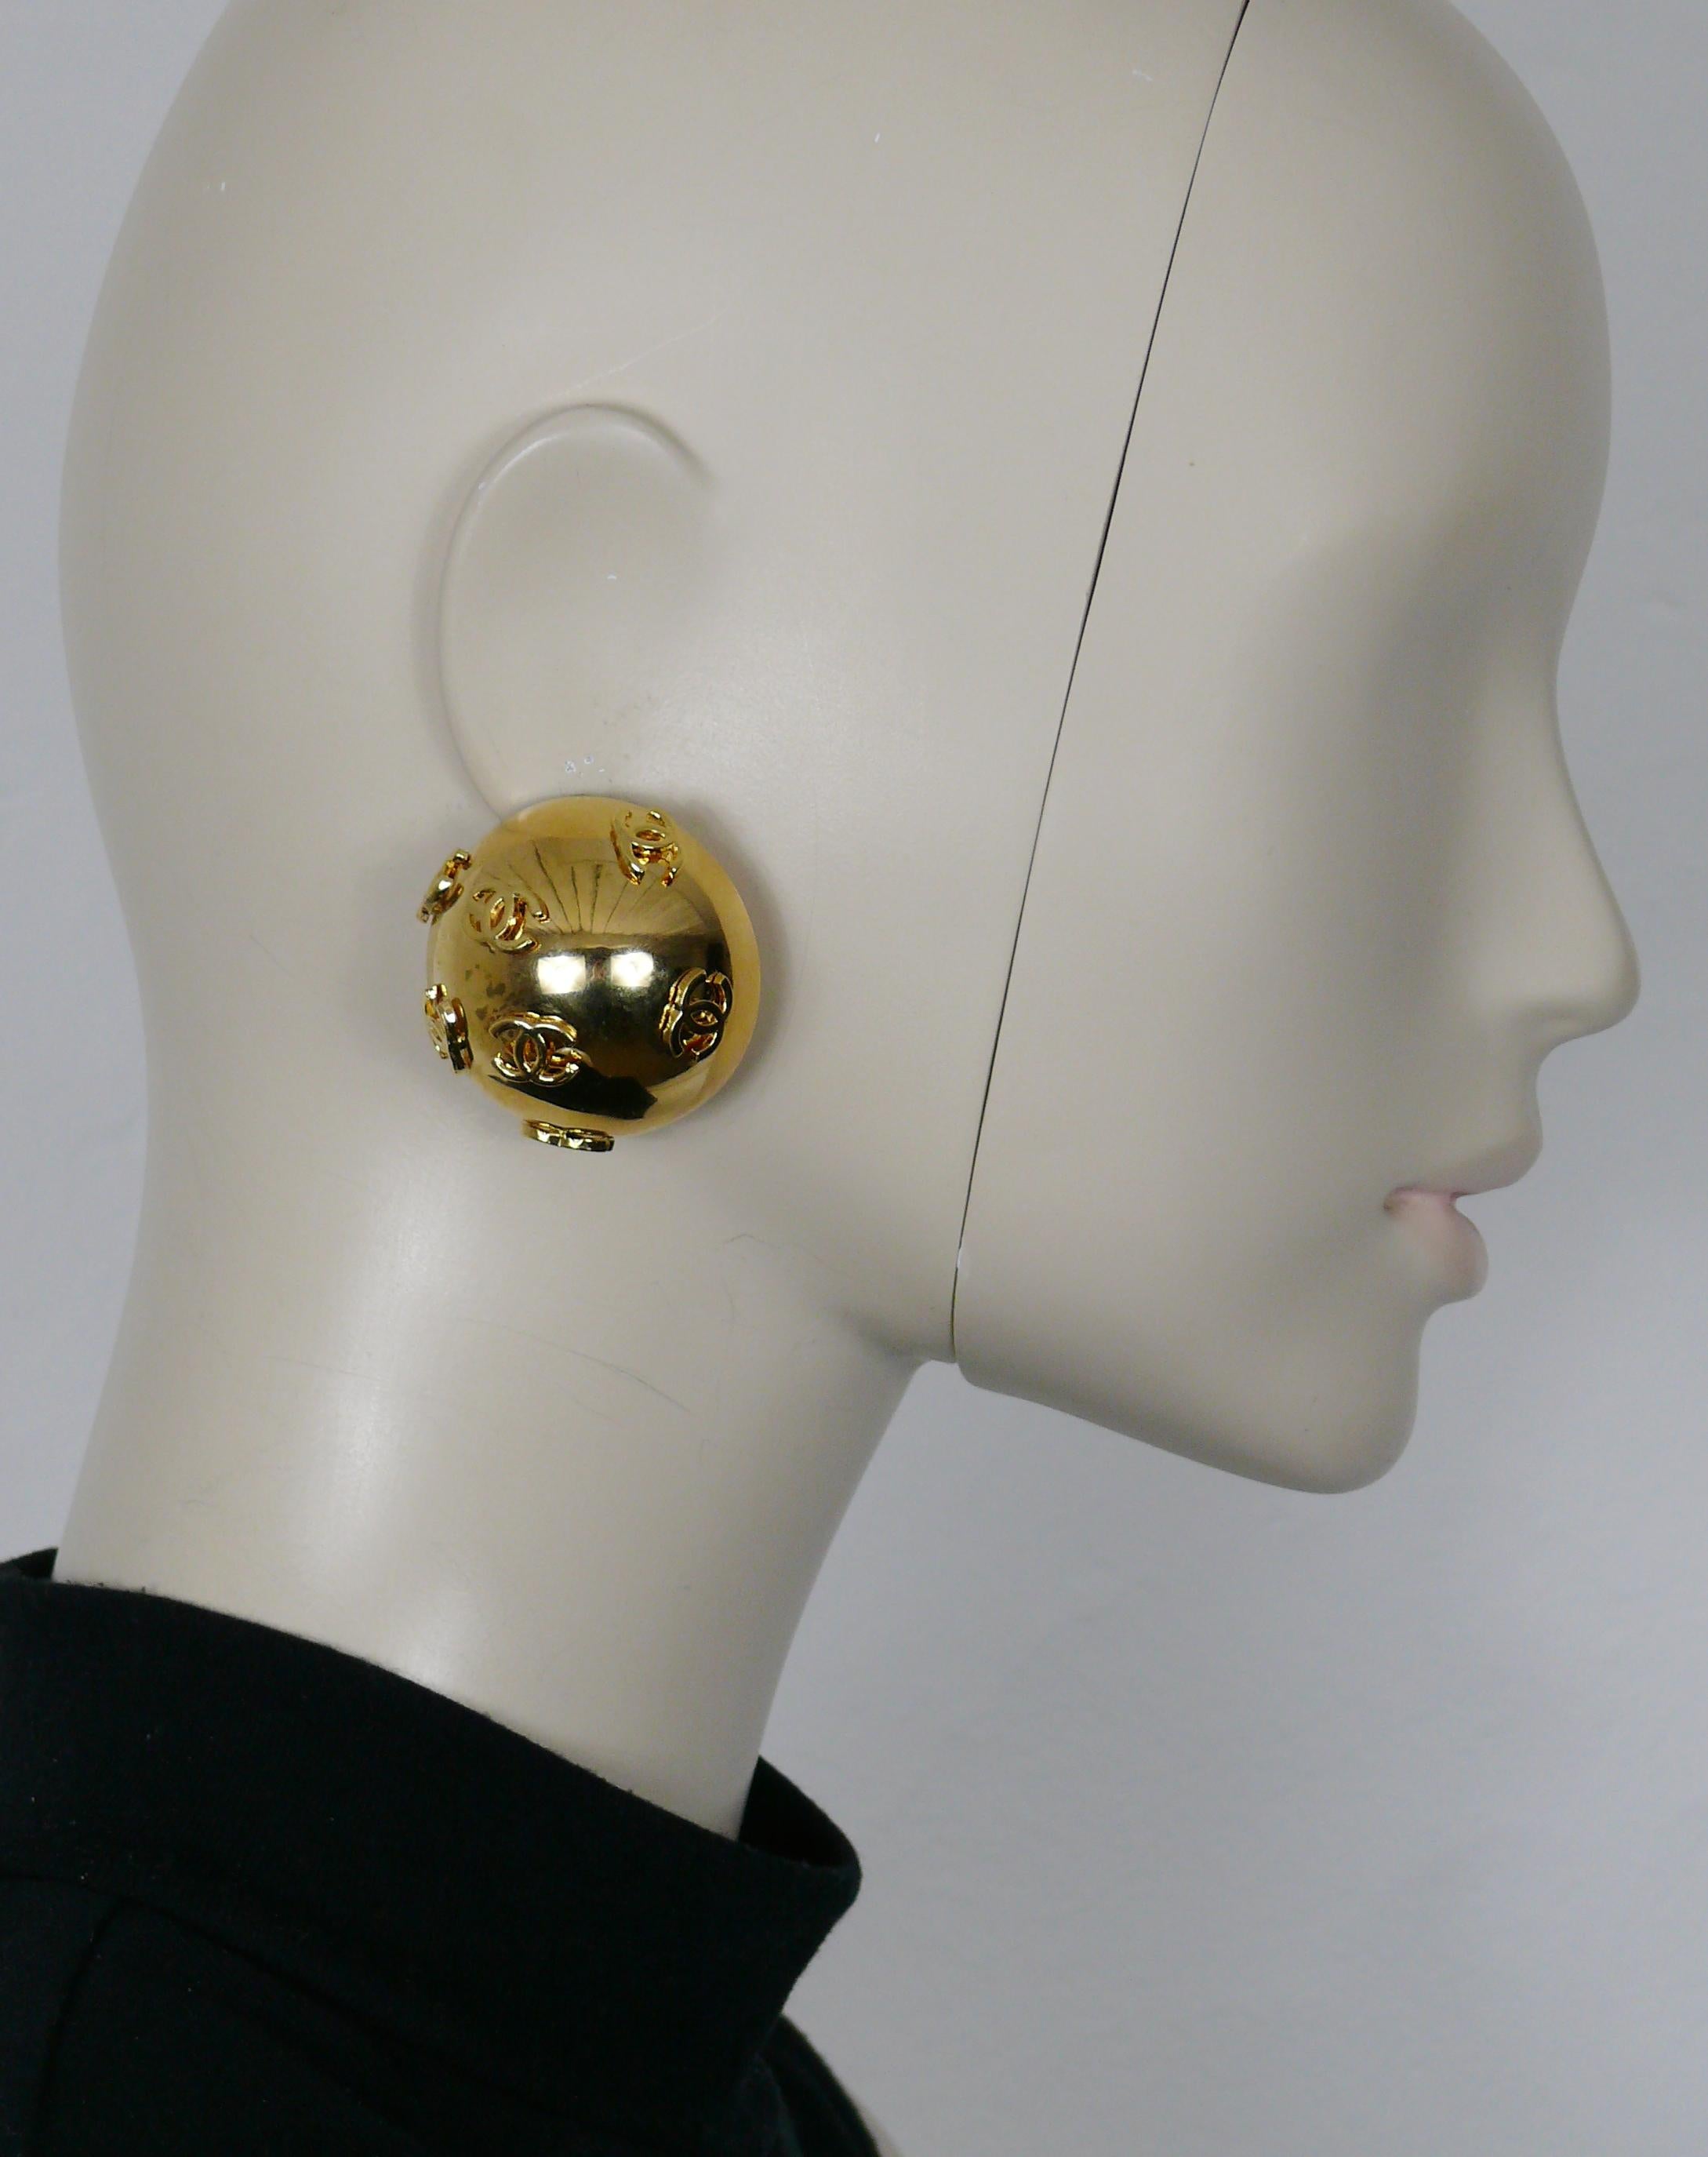 CHANEL by KARL LAGERFELD Vintage übergroße goldfarbene Kuppel-Ohrringe mit CC-Logos auf dem ganzen Körper.

Collection'S Nr. 27 (Jahr: 1992).
Kreativdirektorin für Modeschmuck : VICTOIRE DE CASTELLANE.

Geprägtes CHANEL 2 7 Made in